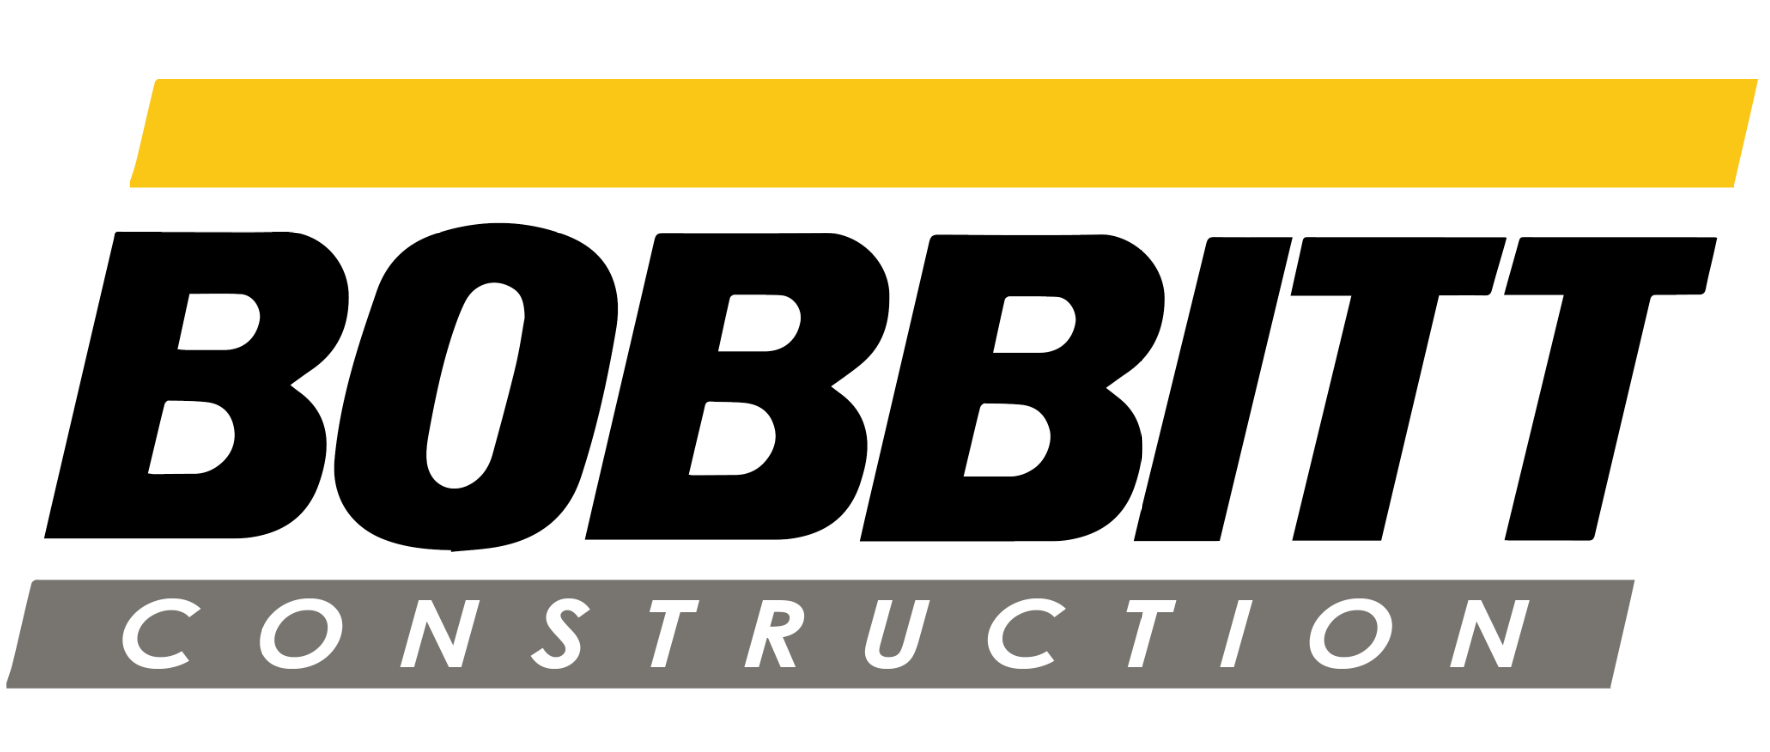 Bobbitt Construction Logo